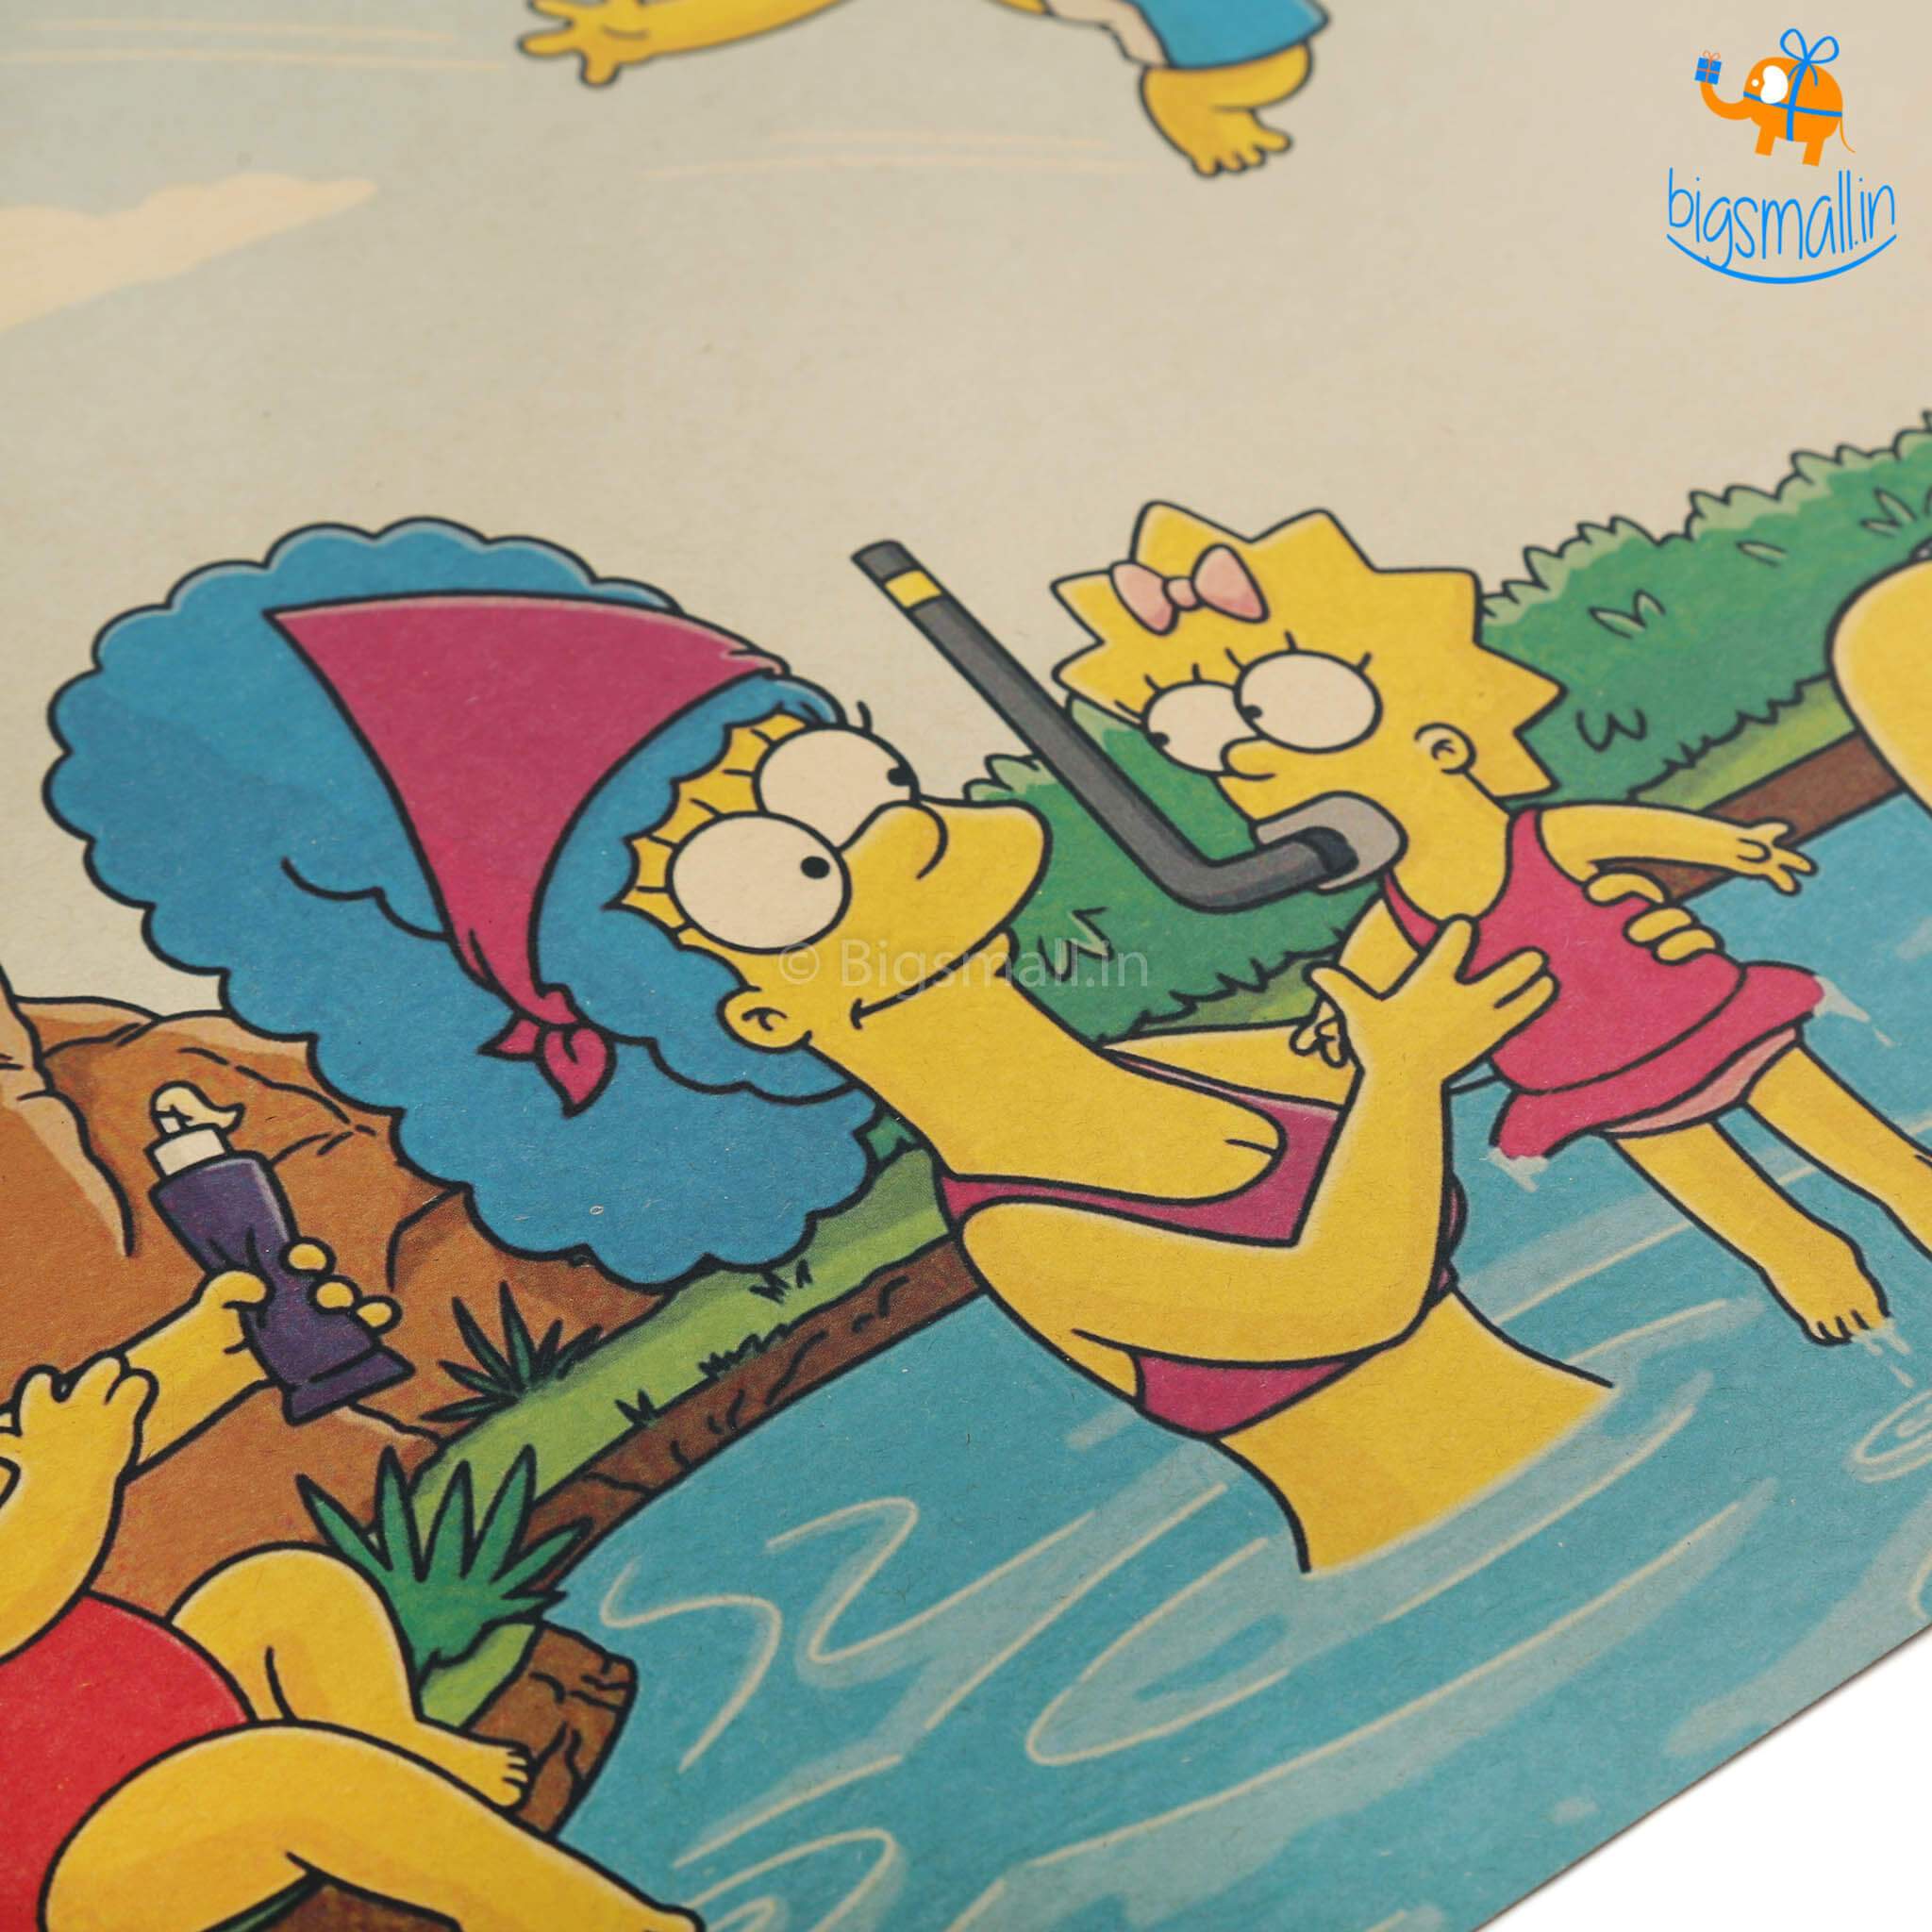 Simpsons Kraft Paper Poster - bigsmall.in